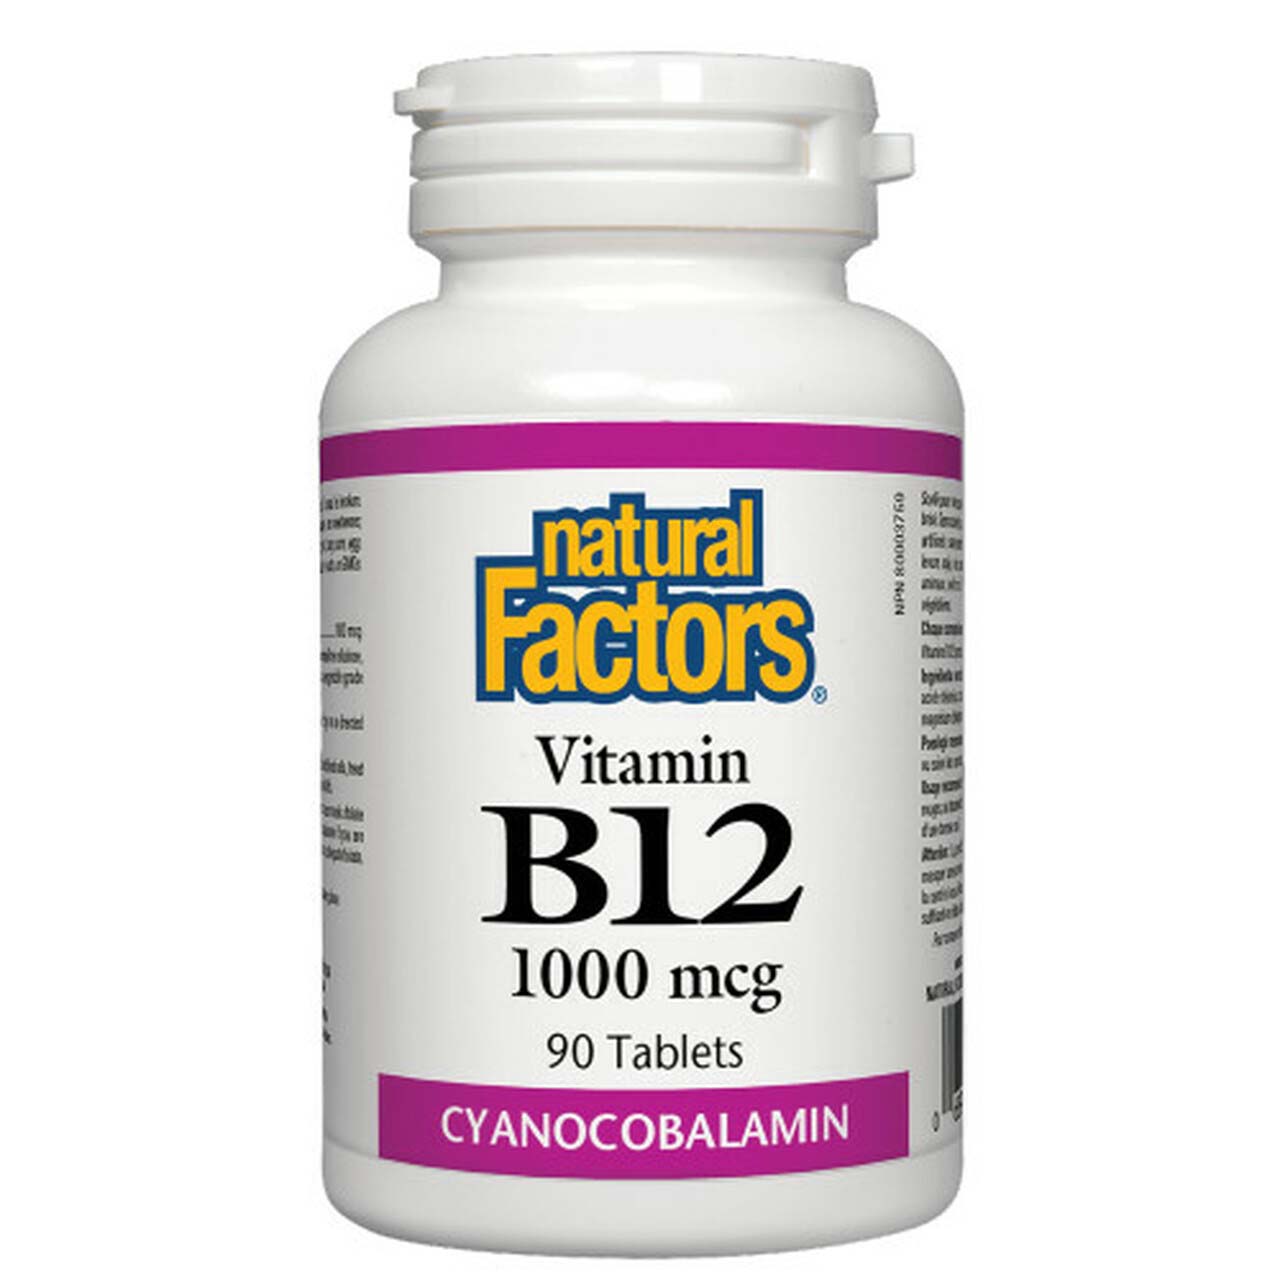 Natural Factors Vitamin B12 90 Tablets 1000 mcg